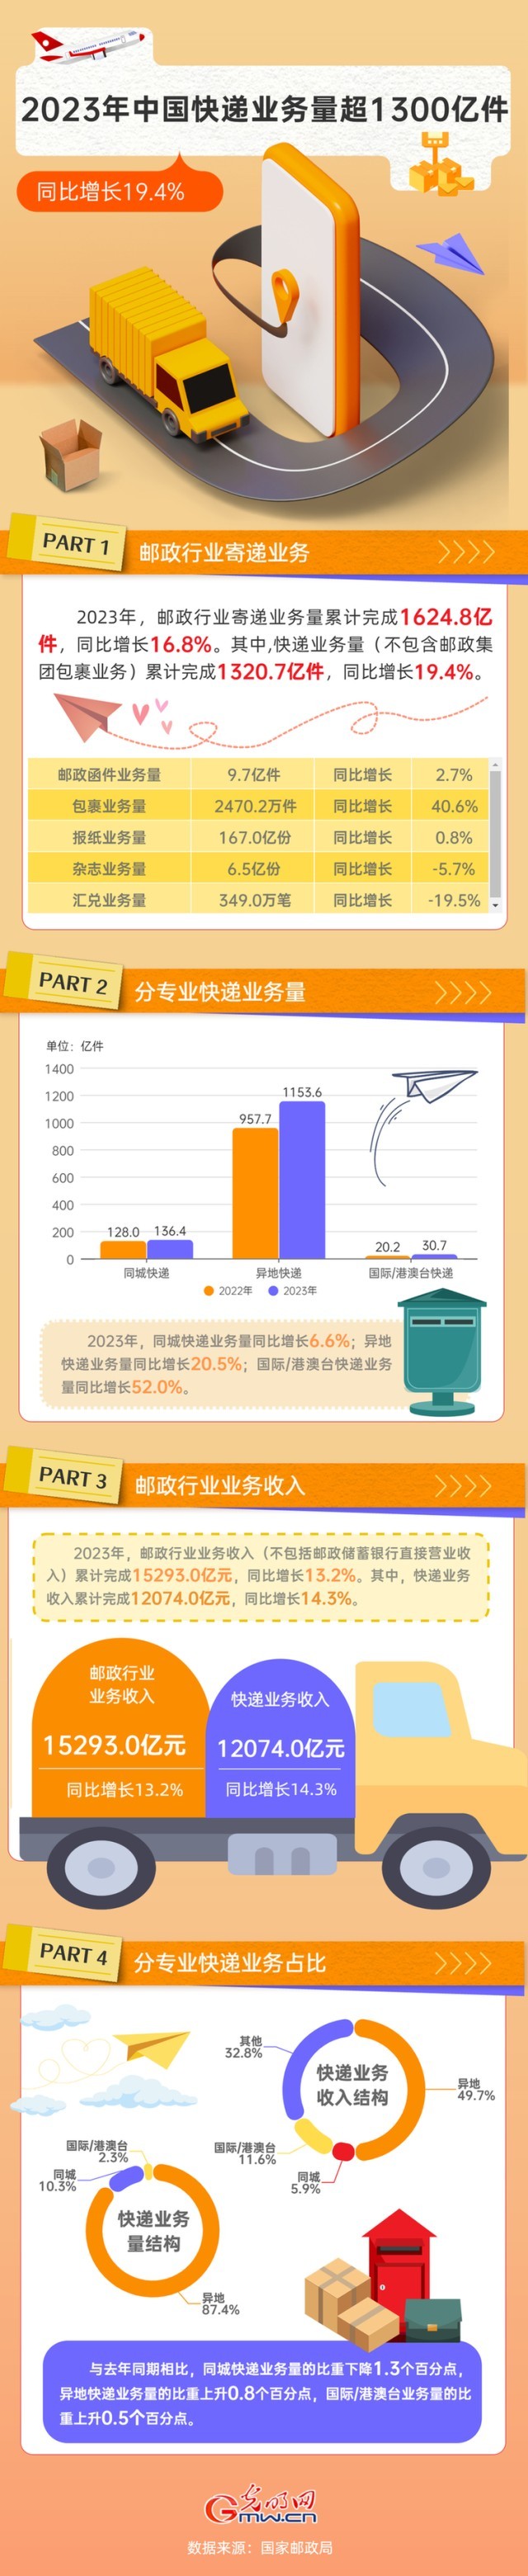 2023年中国快递业务量完成超1300亿件